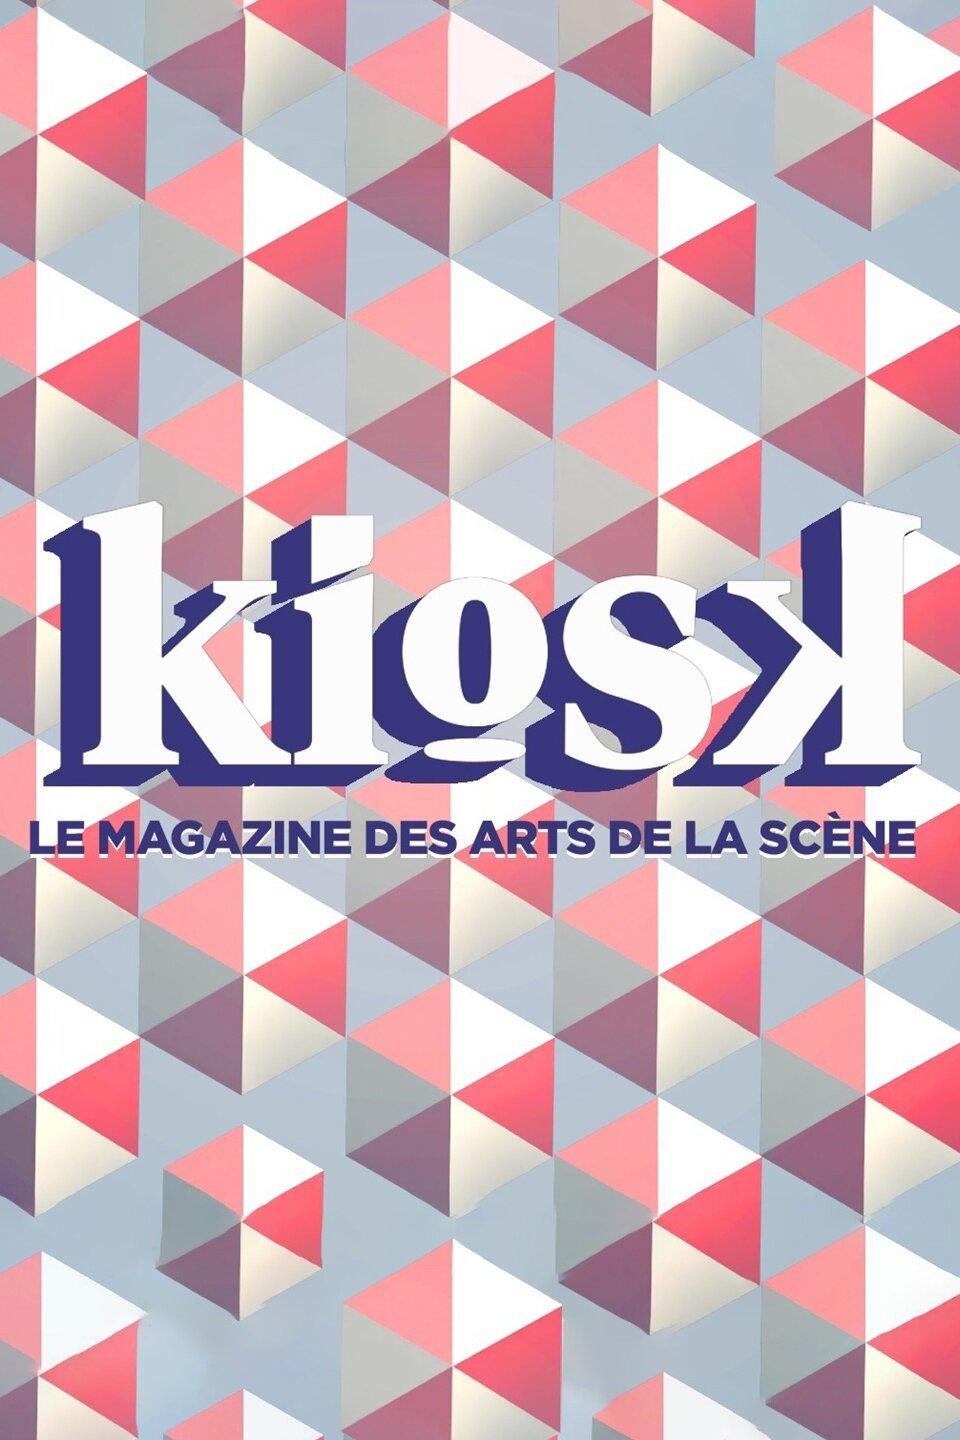 KIOSK, le magazine des arts de la scène